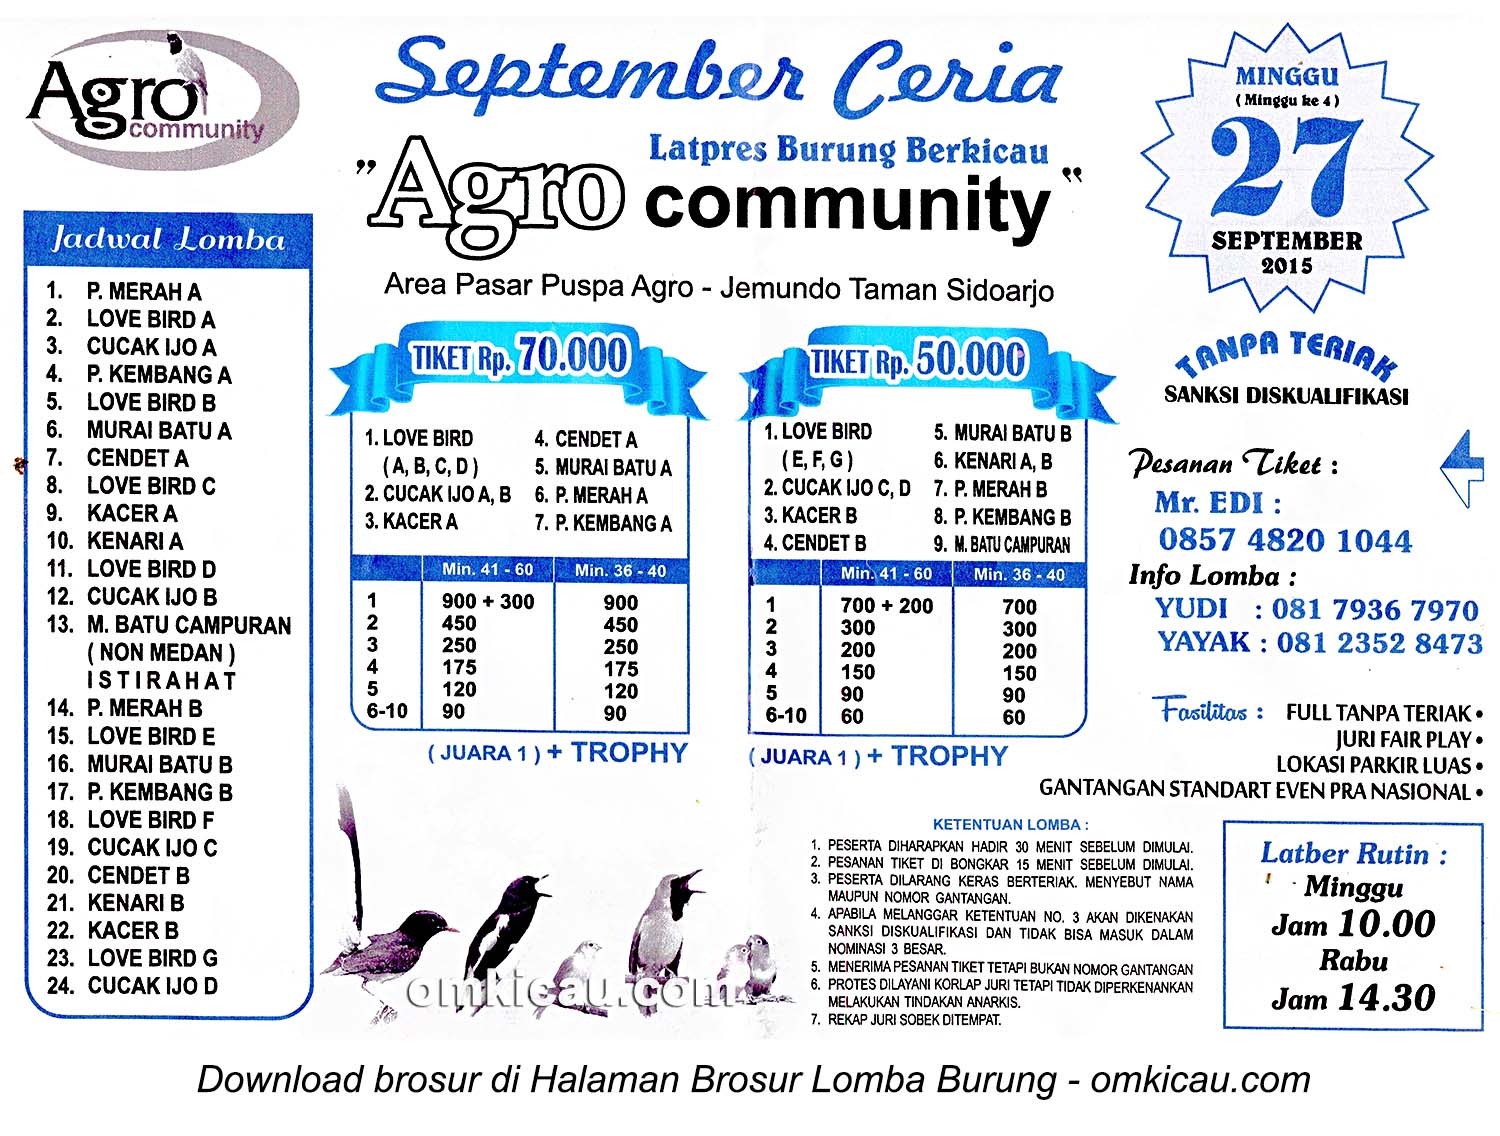 Brosur Latpres September Ceria Agro Community, Sidoarjo, 27 September 2015